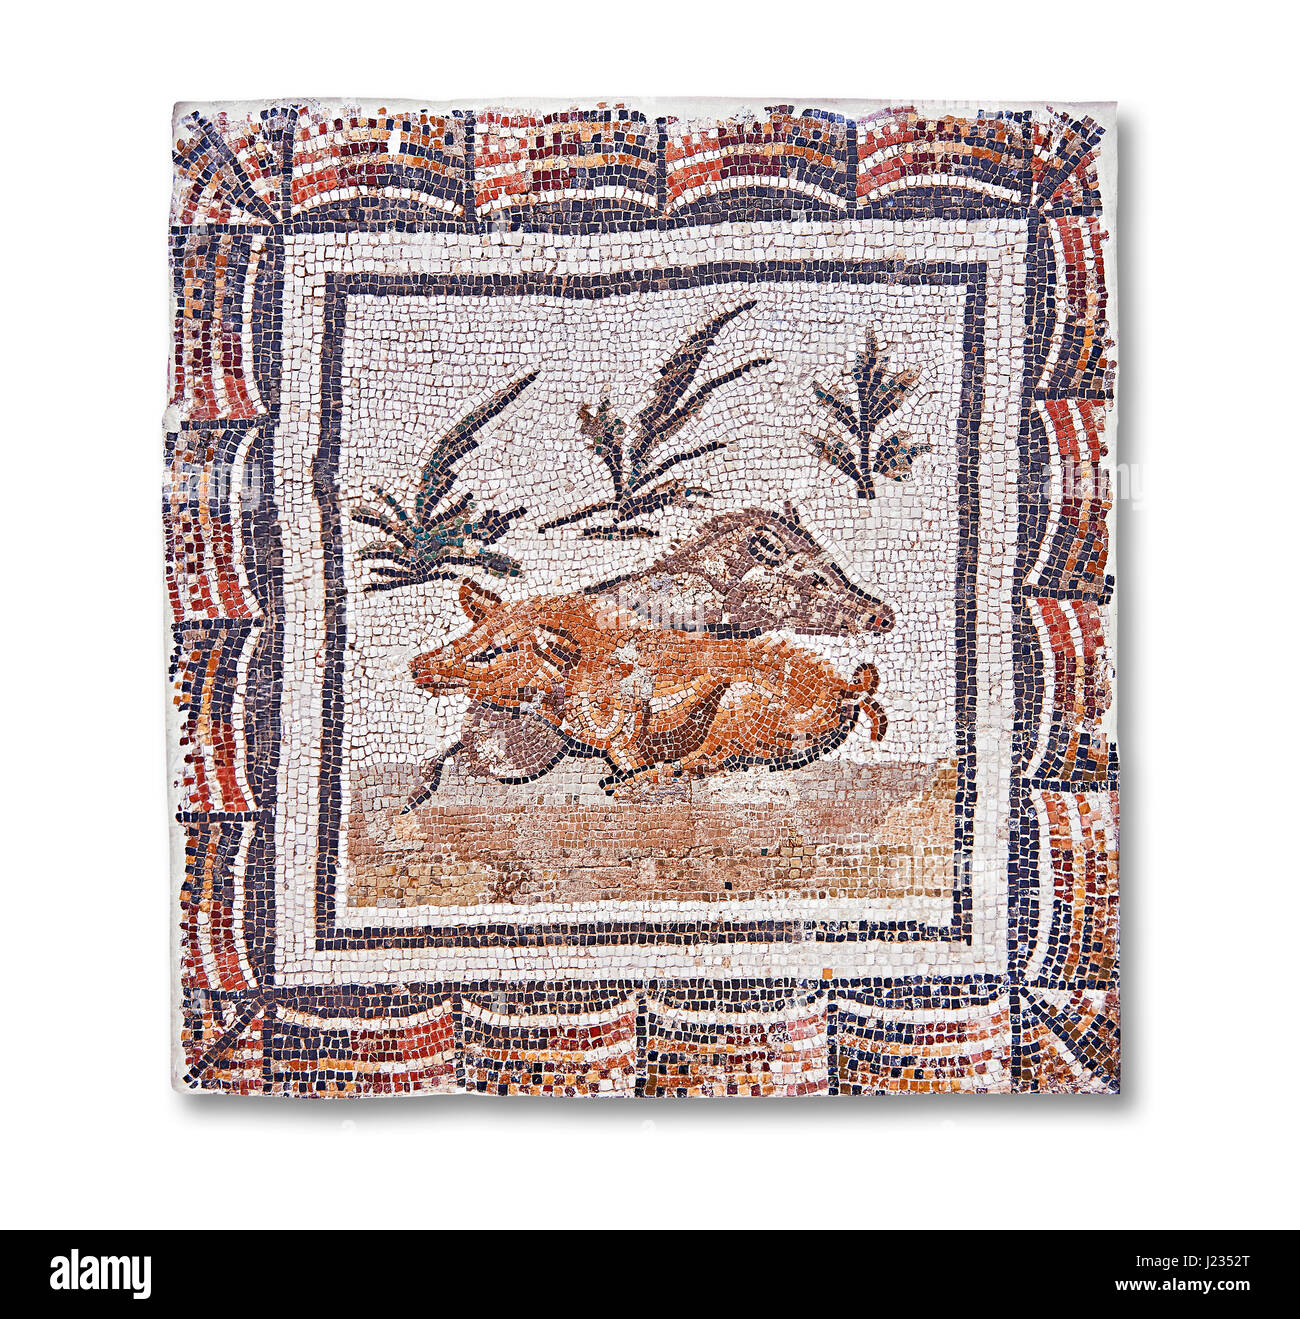 3e siècle mosaïque romaine avant d'un verrat et une truie couchée. De Thysdrus (El Jem), Tunisie. Le Musée du Bardo, Tunis, Tunisie. Fond blanc Banque D'Images